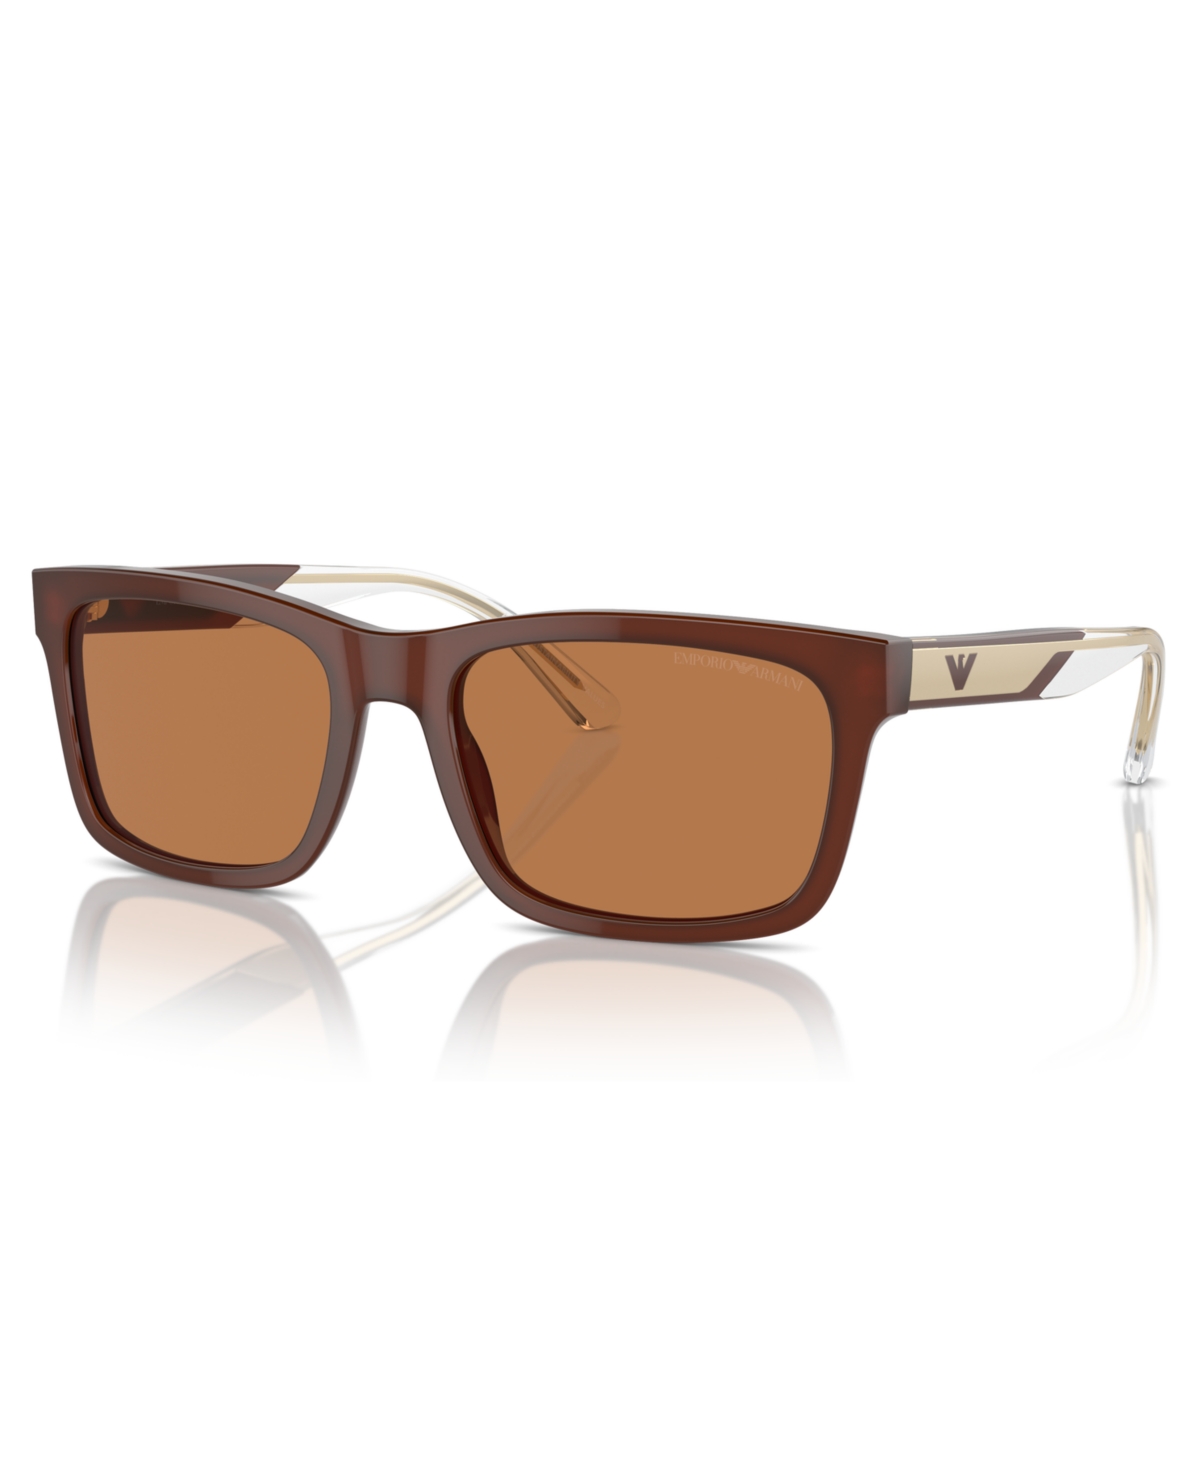 Emporio Armani Men's Sunglasses, Ea4224 In Shiny Opaline Brown